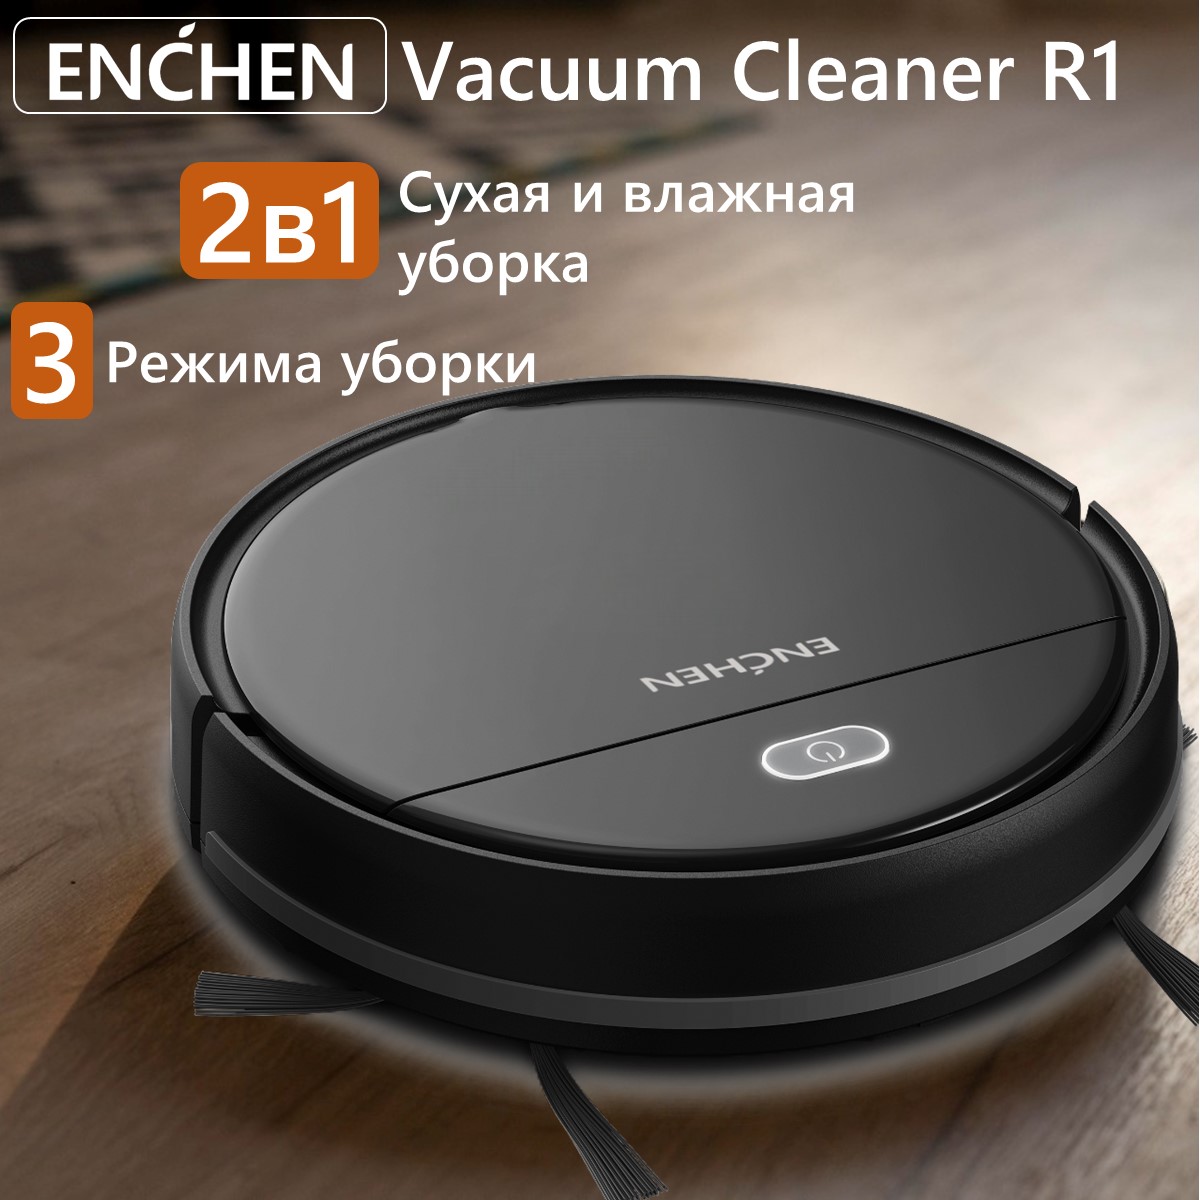 Робот-пылесос ENCHEN Vacuum Cleaner R1 черный пылесос futula vacuum cleaner v4 серый